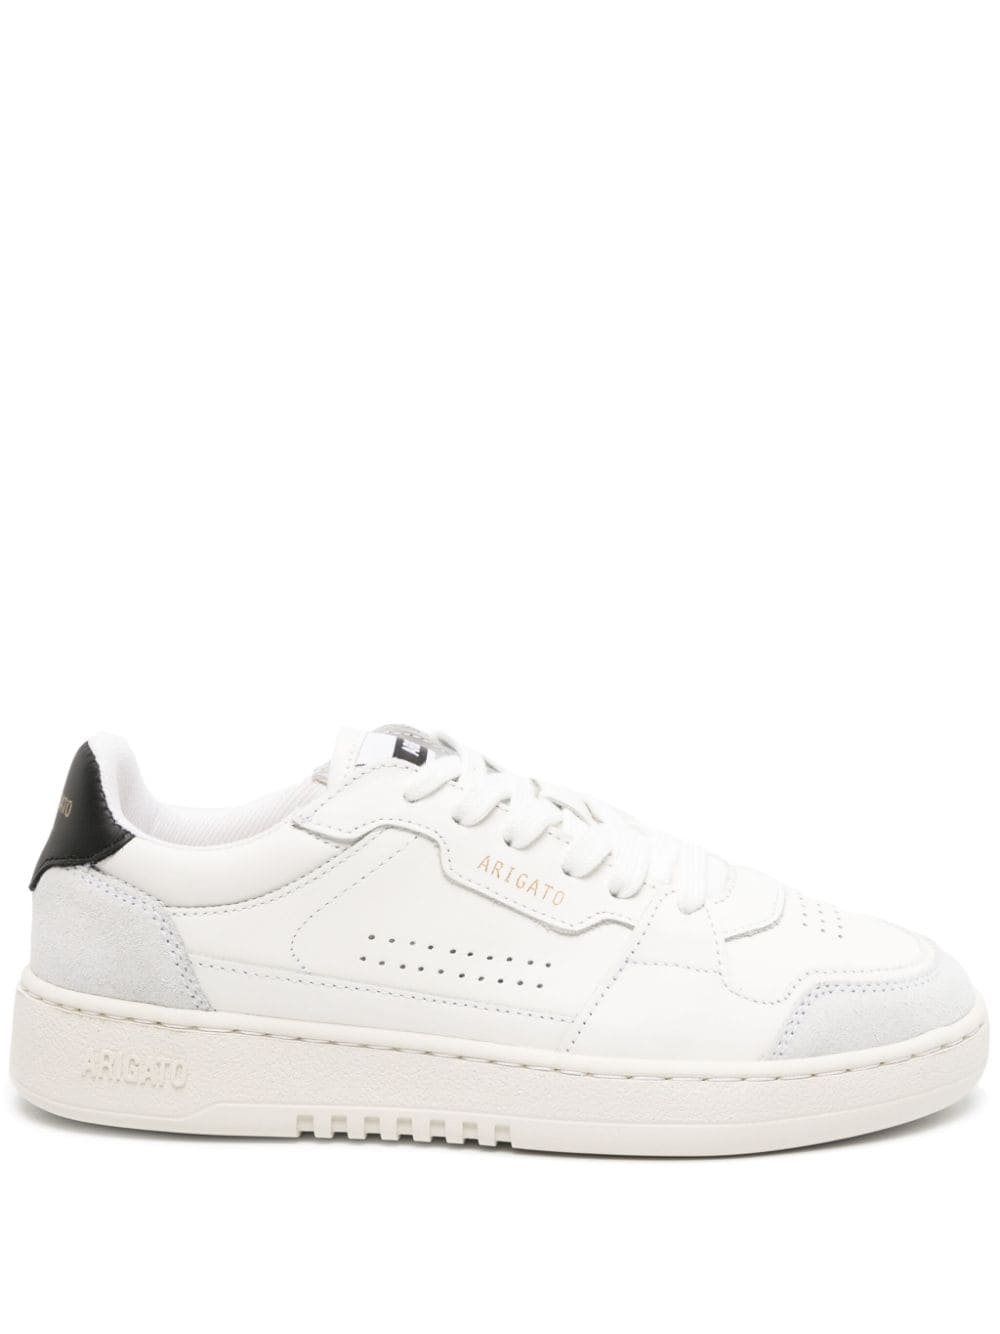 Axel Arigato Dice leather sneakers - White von Axel Arigato